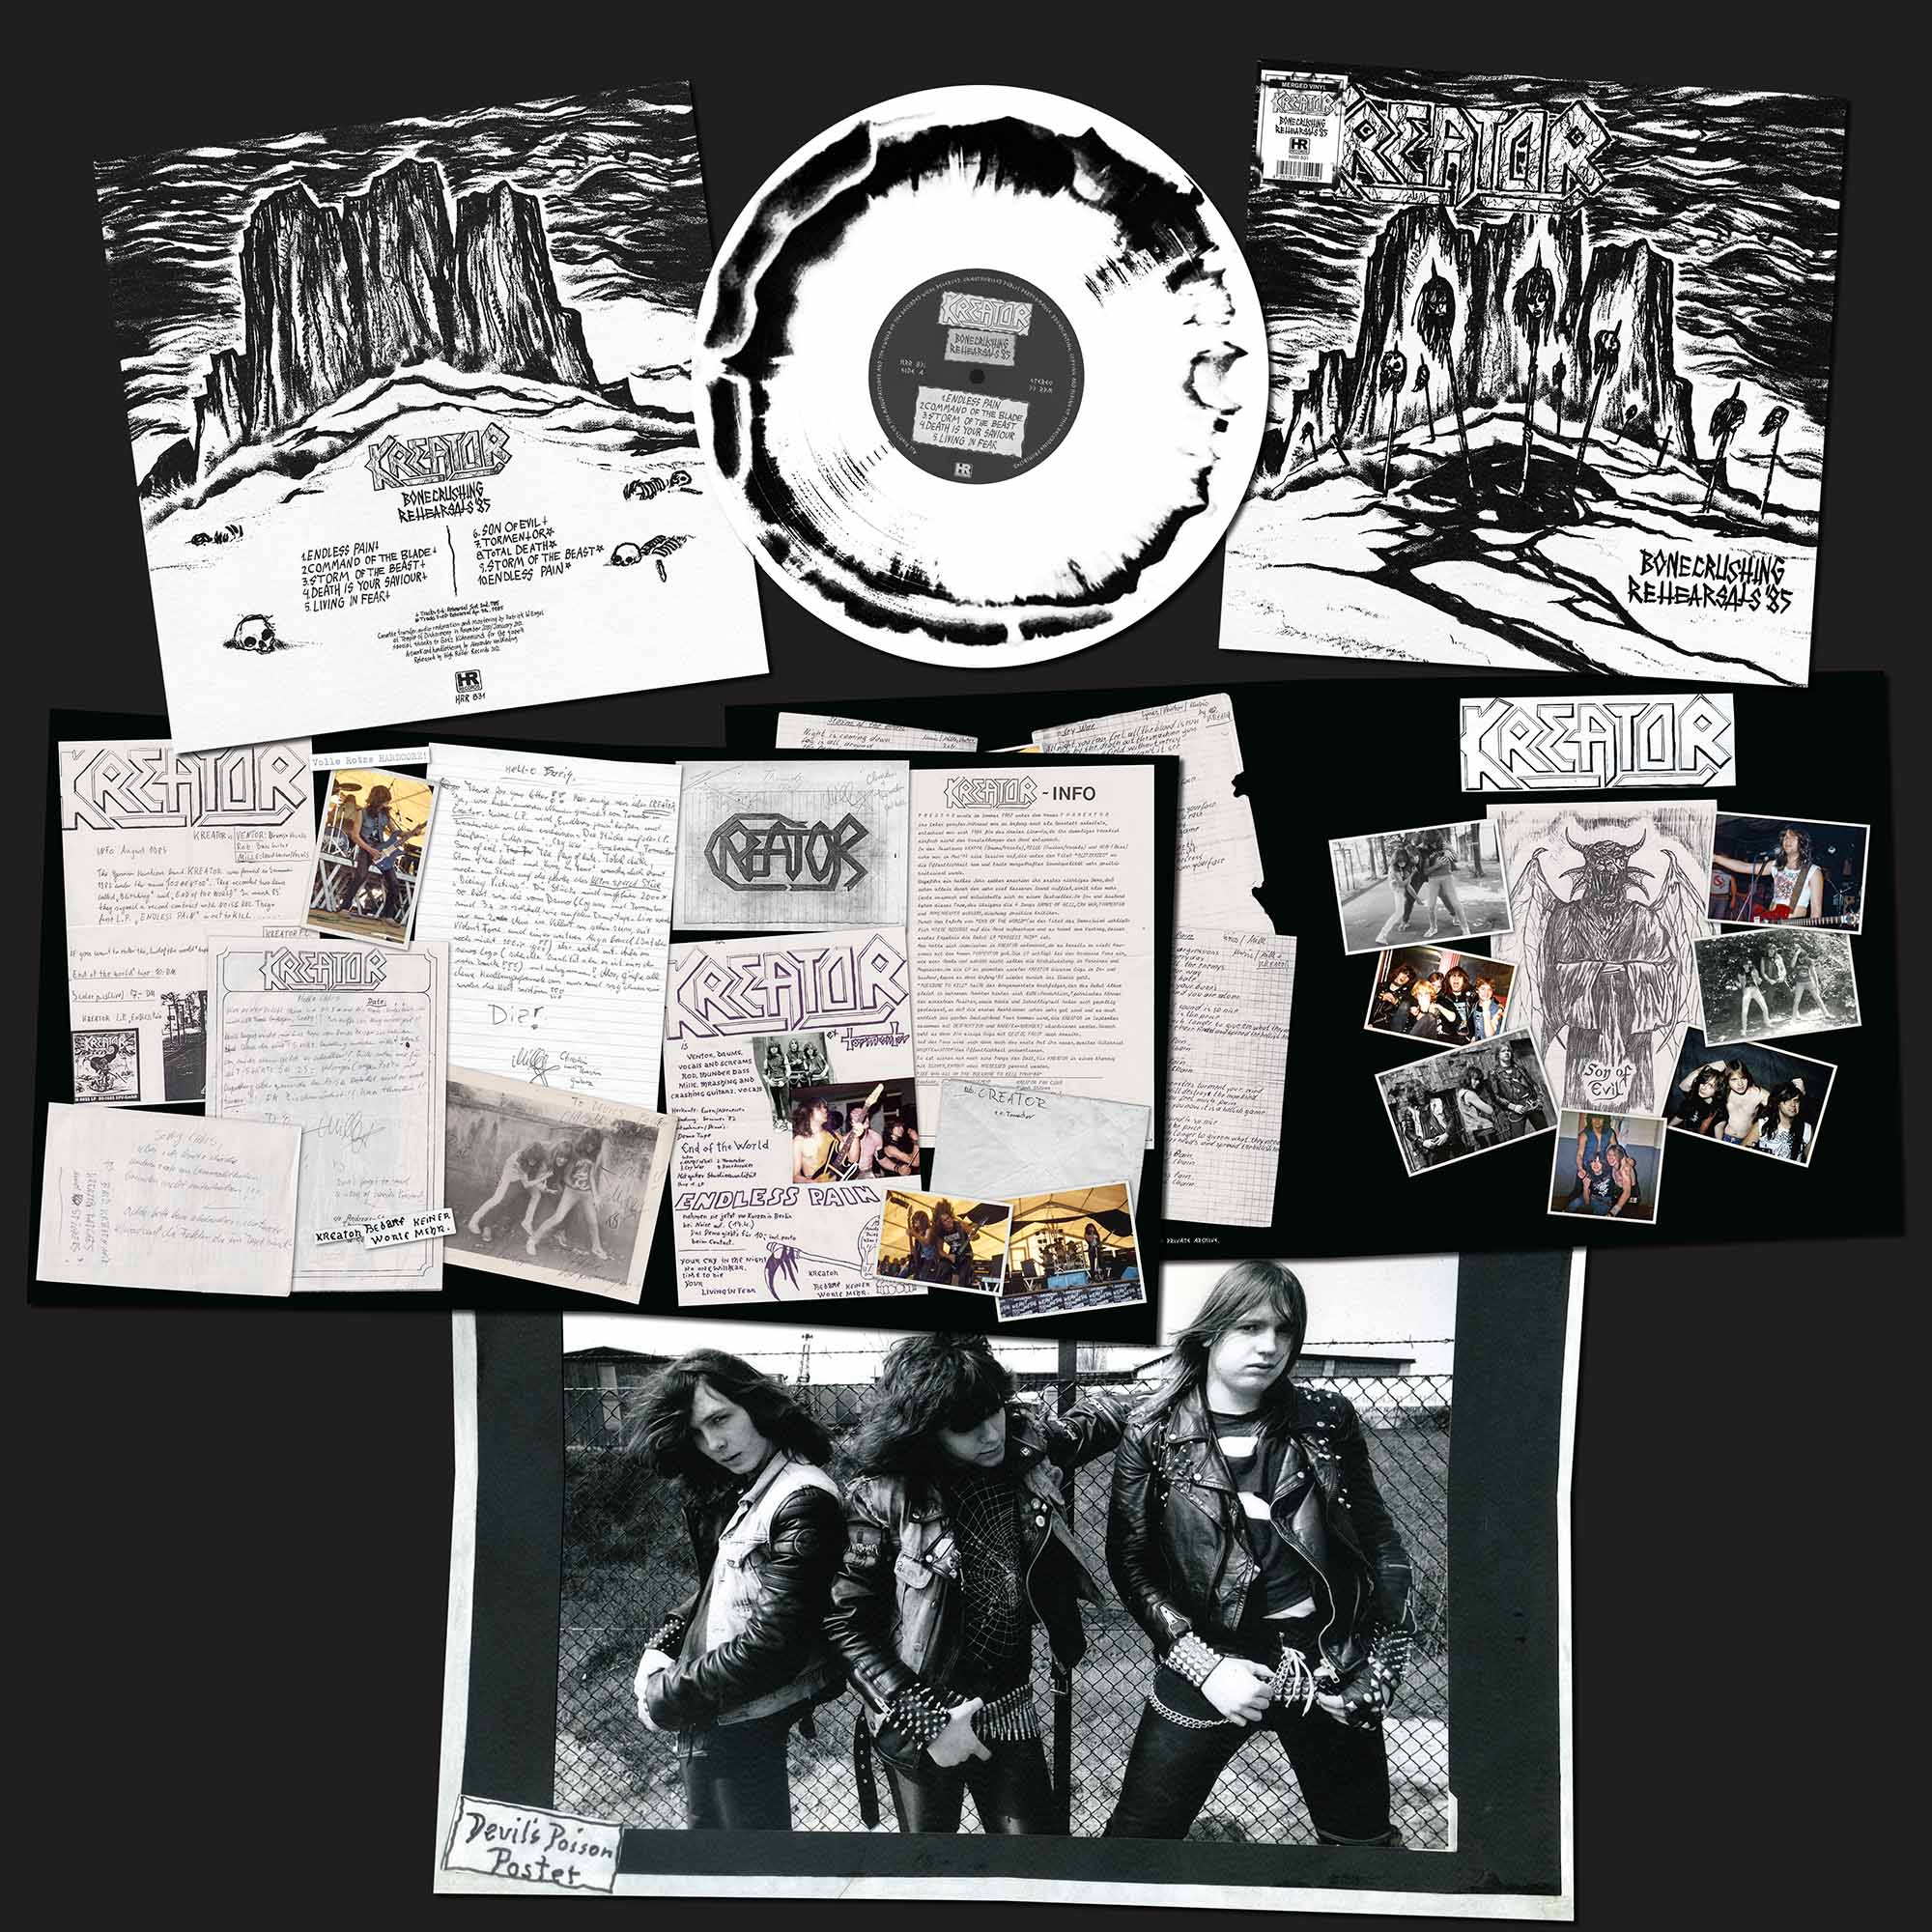 KREATOR - Bonecrushing Rehearsals '85 LP